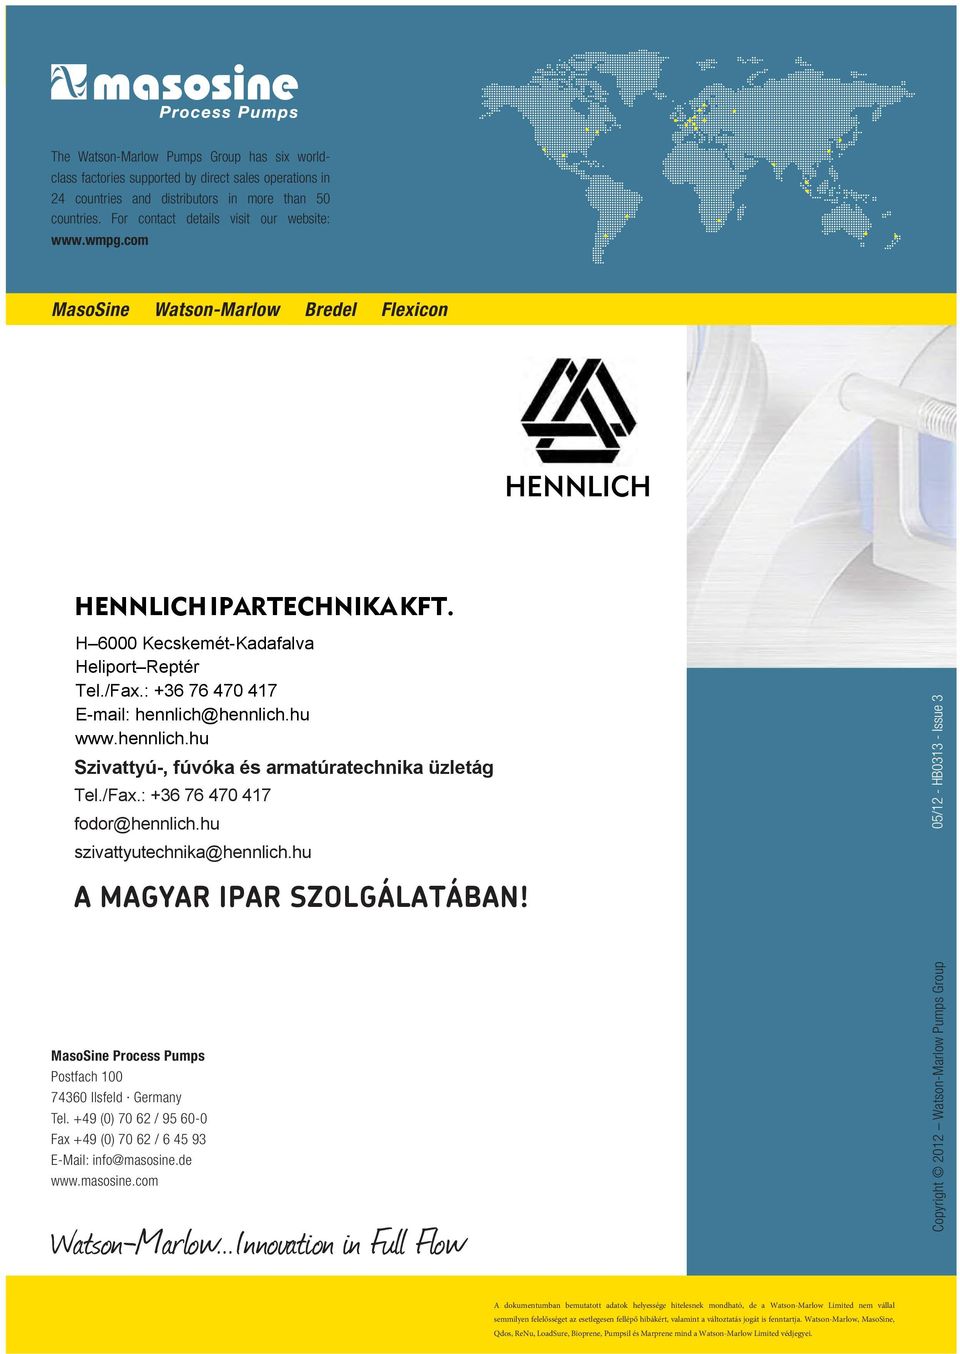 hennlich.hu www.hennlich.hu Szivattyú-, fúvóka és armatúratechnika üzletág Tel./Fax.: +36 76 47 417 fodor@hennlich.hu szivattyutechnika@hennlich.hu 5/12 - HB313 - Issue 3 A MAGYAR IPAR SZOLGÁLATÁBAN!